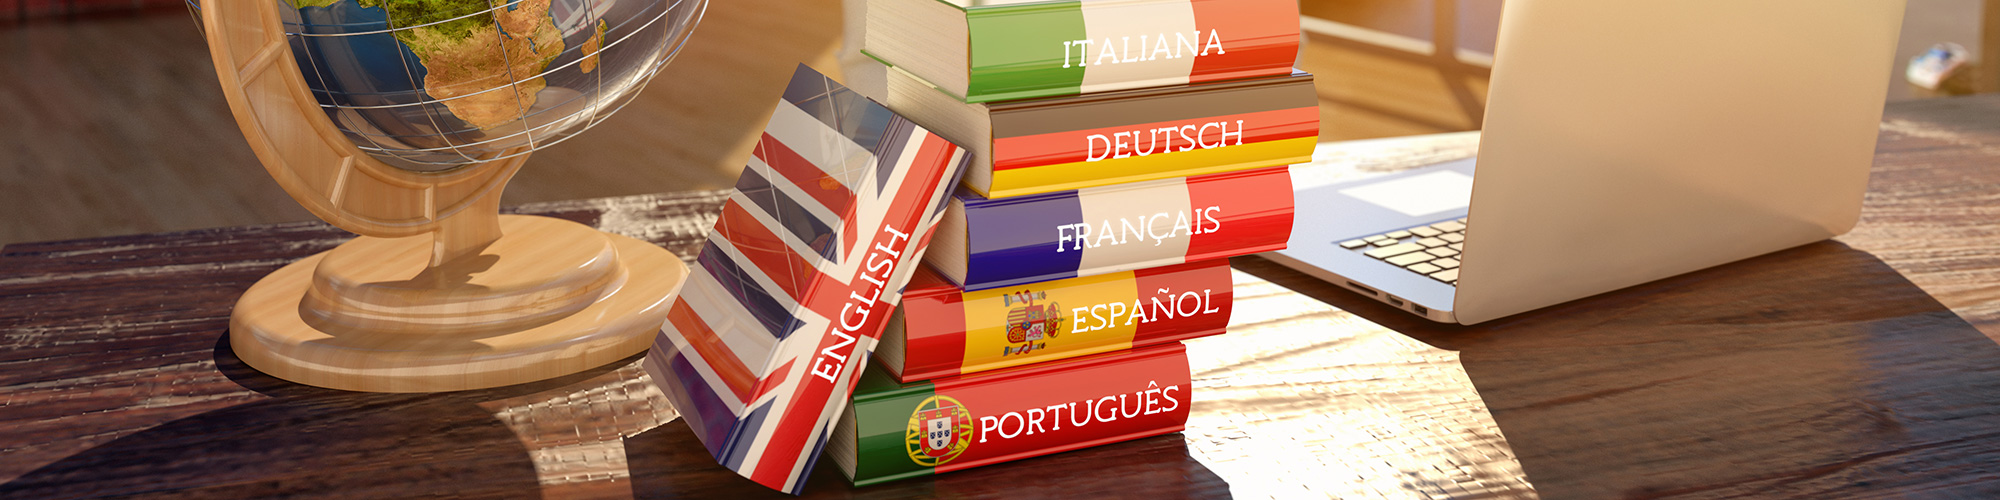 Globus und Wörterbücher Englisch Italienisch Deutsch Französisch Spanisch und Portugiesisch